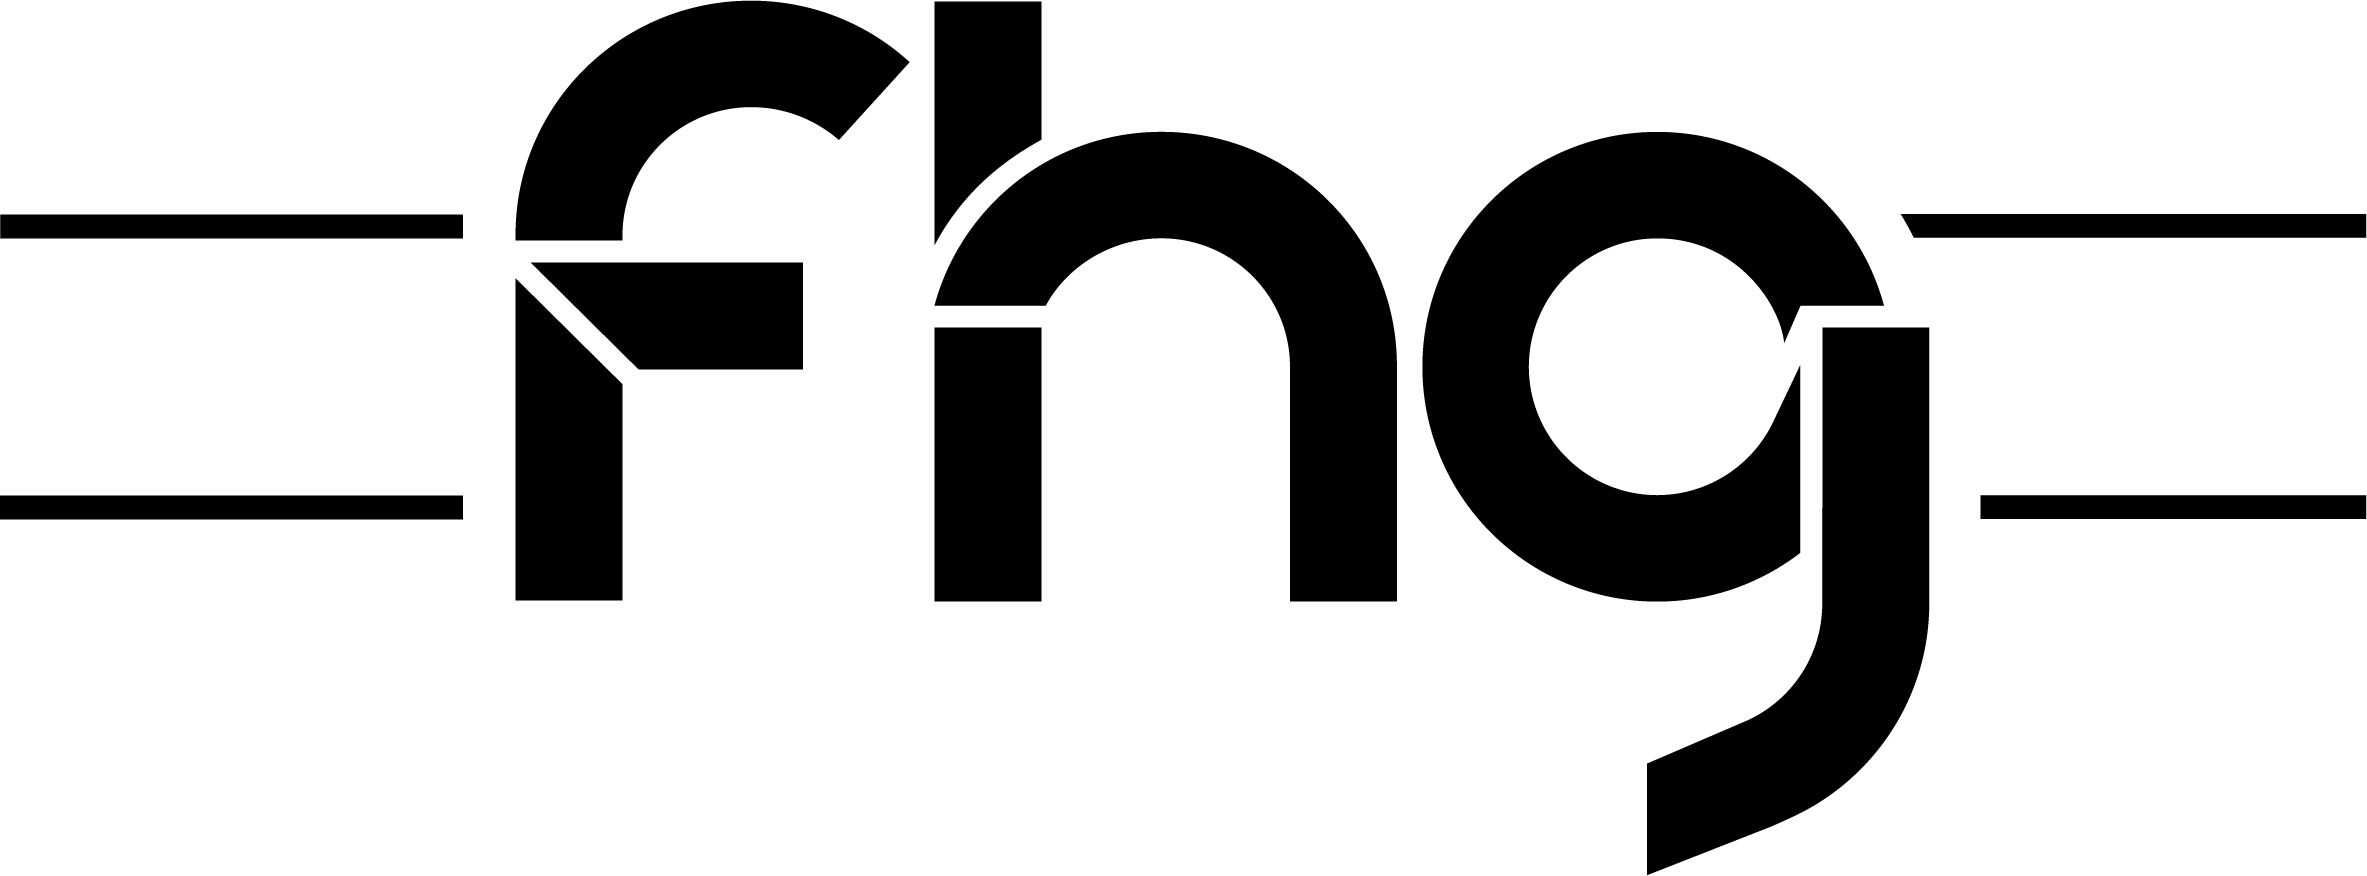 Logo von fhg Fuhrparkmanagementgesellschaft mbH